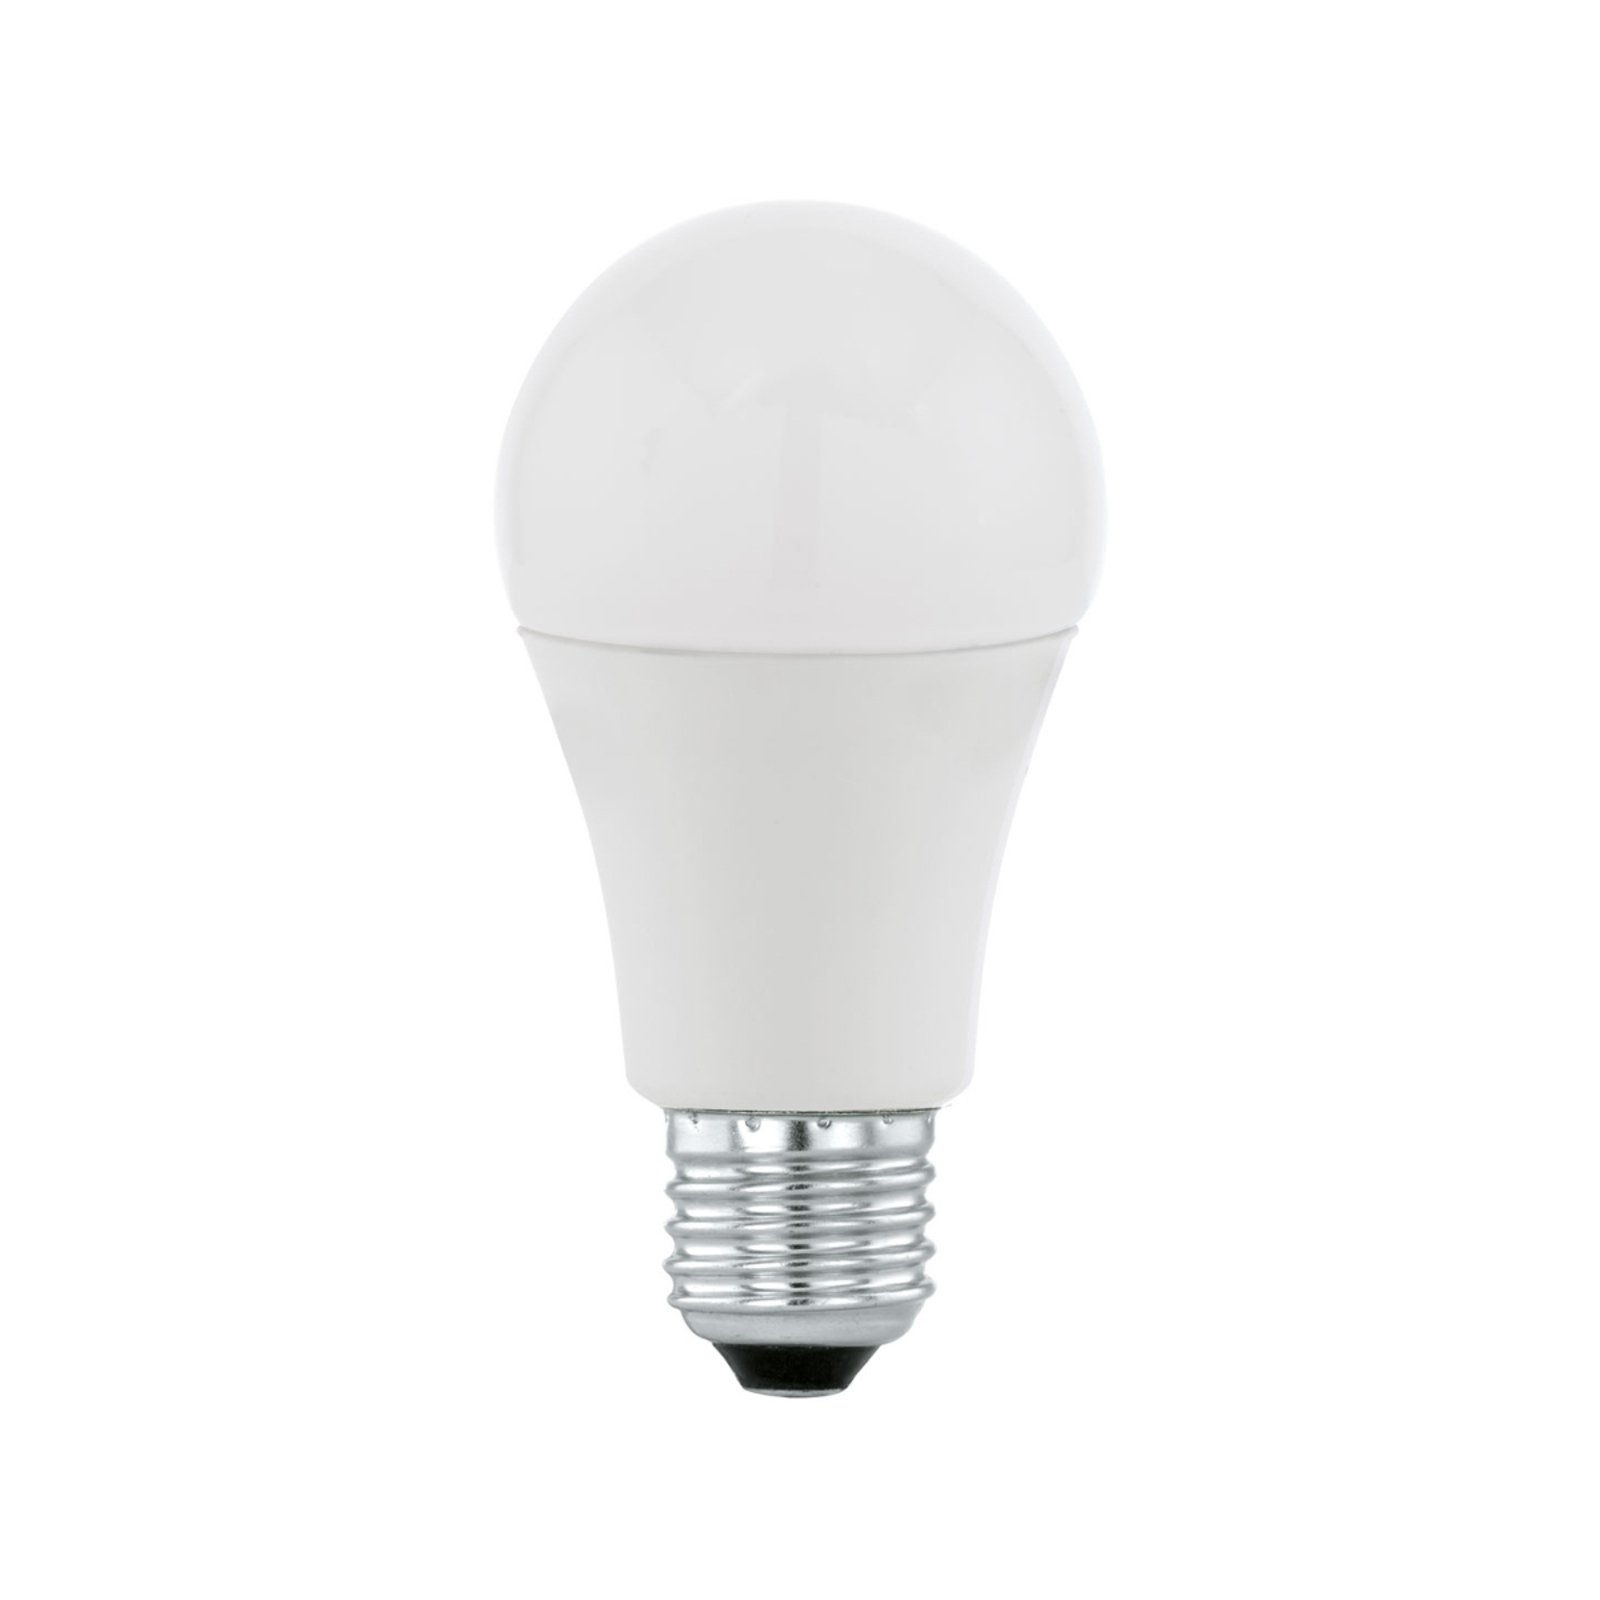 LED-Lampe E27 A60 9W, warmweiß, opal